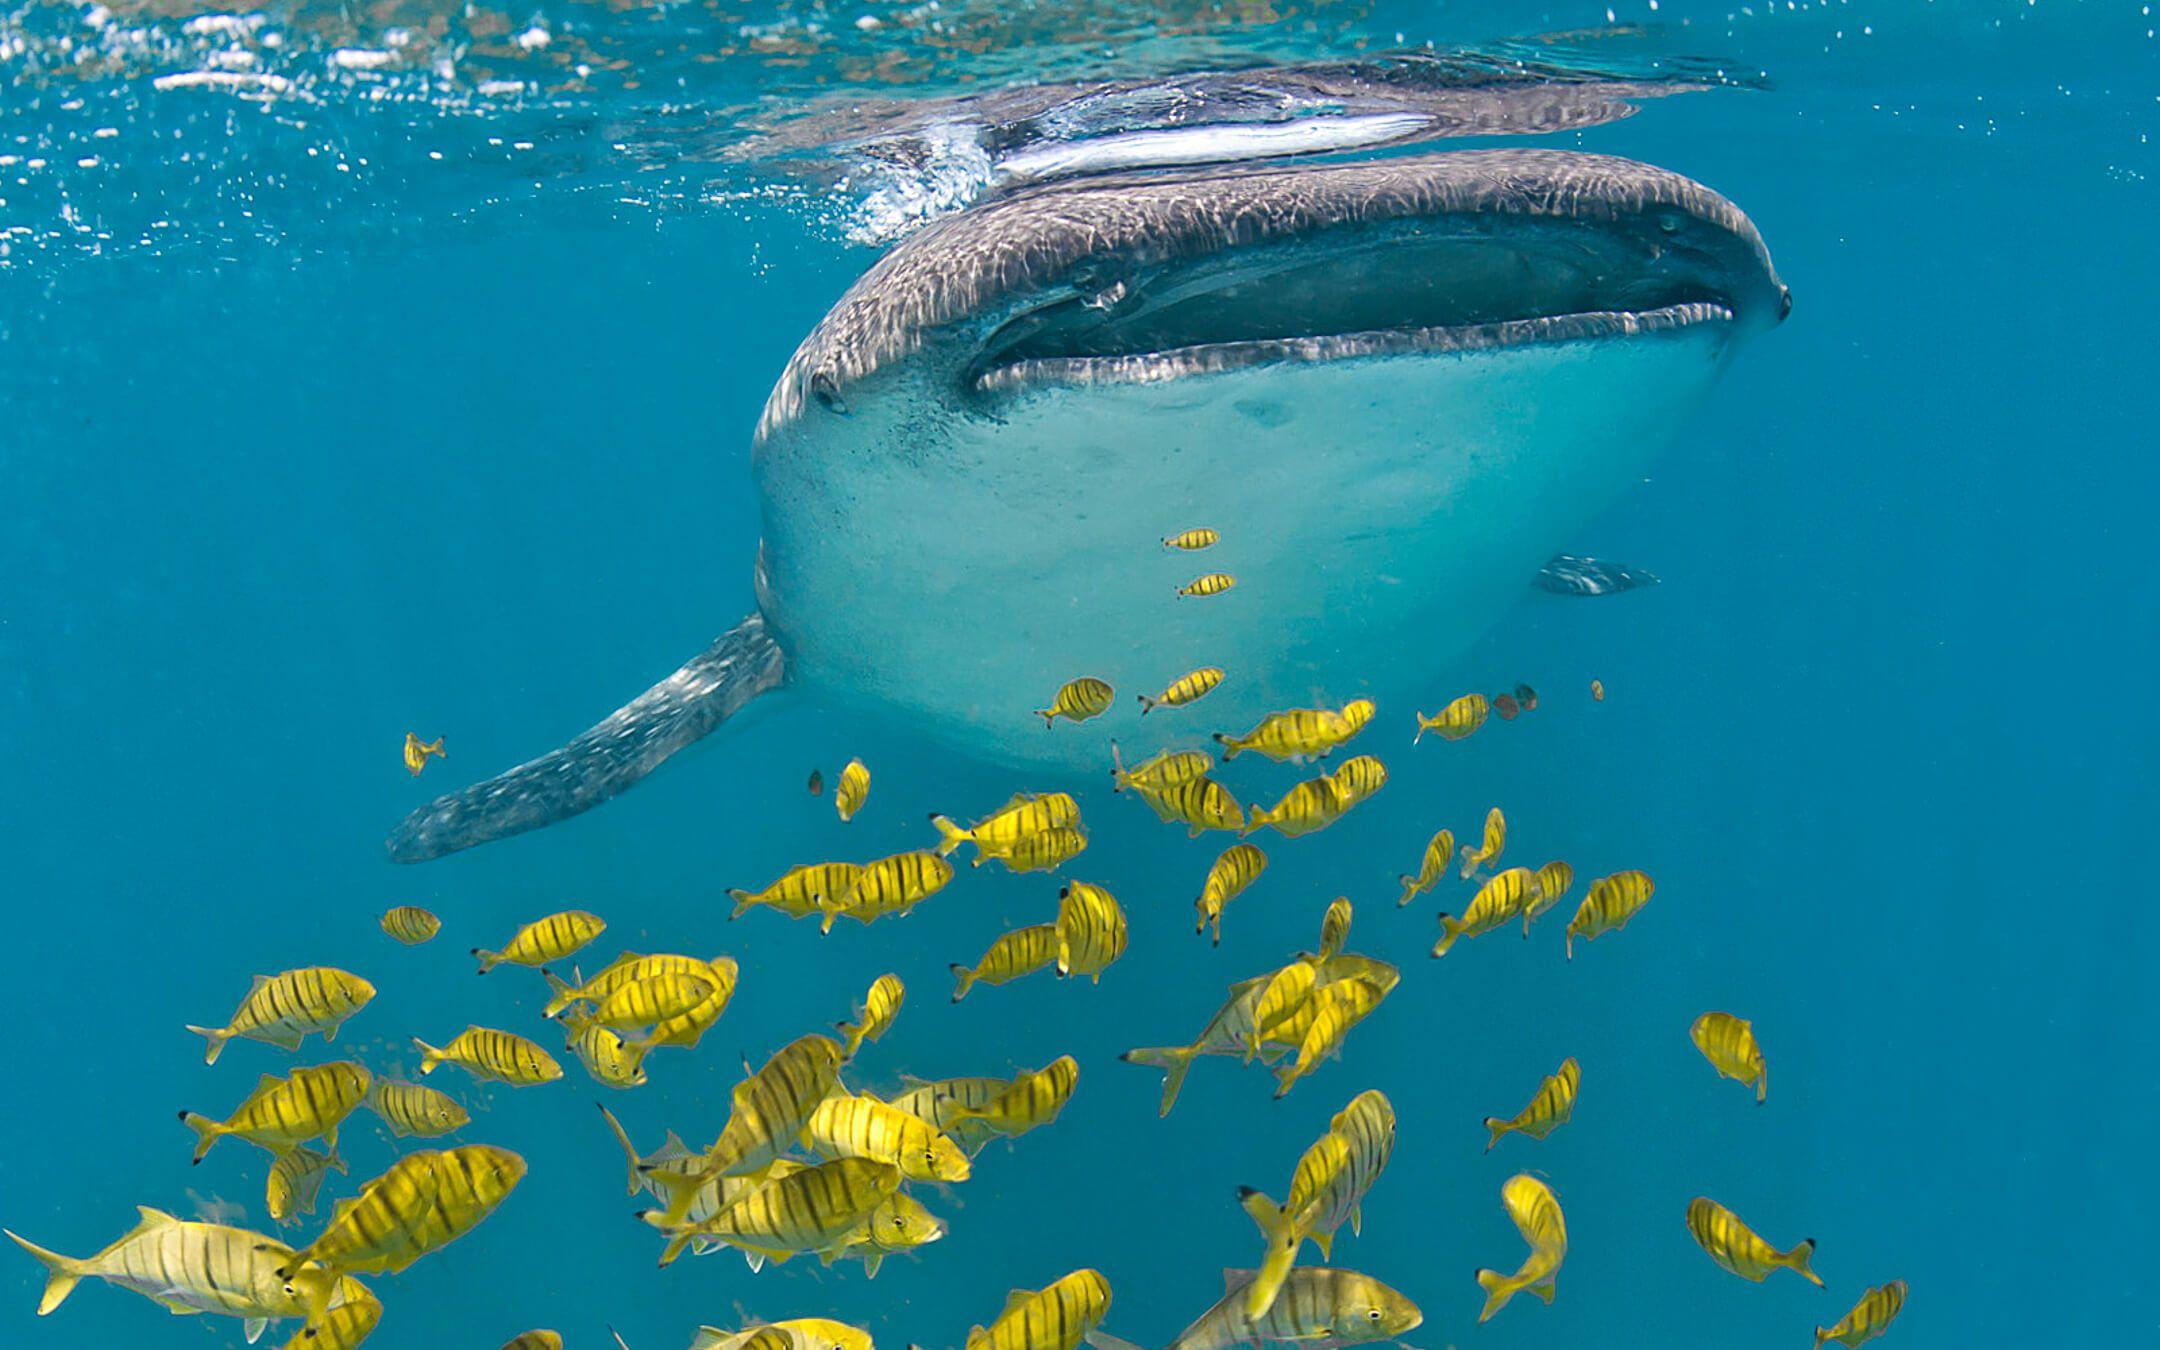 قرش الحوت في البحر الأحمر
تصوير: جوليا سبيت